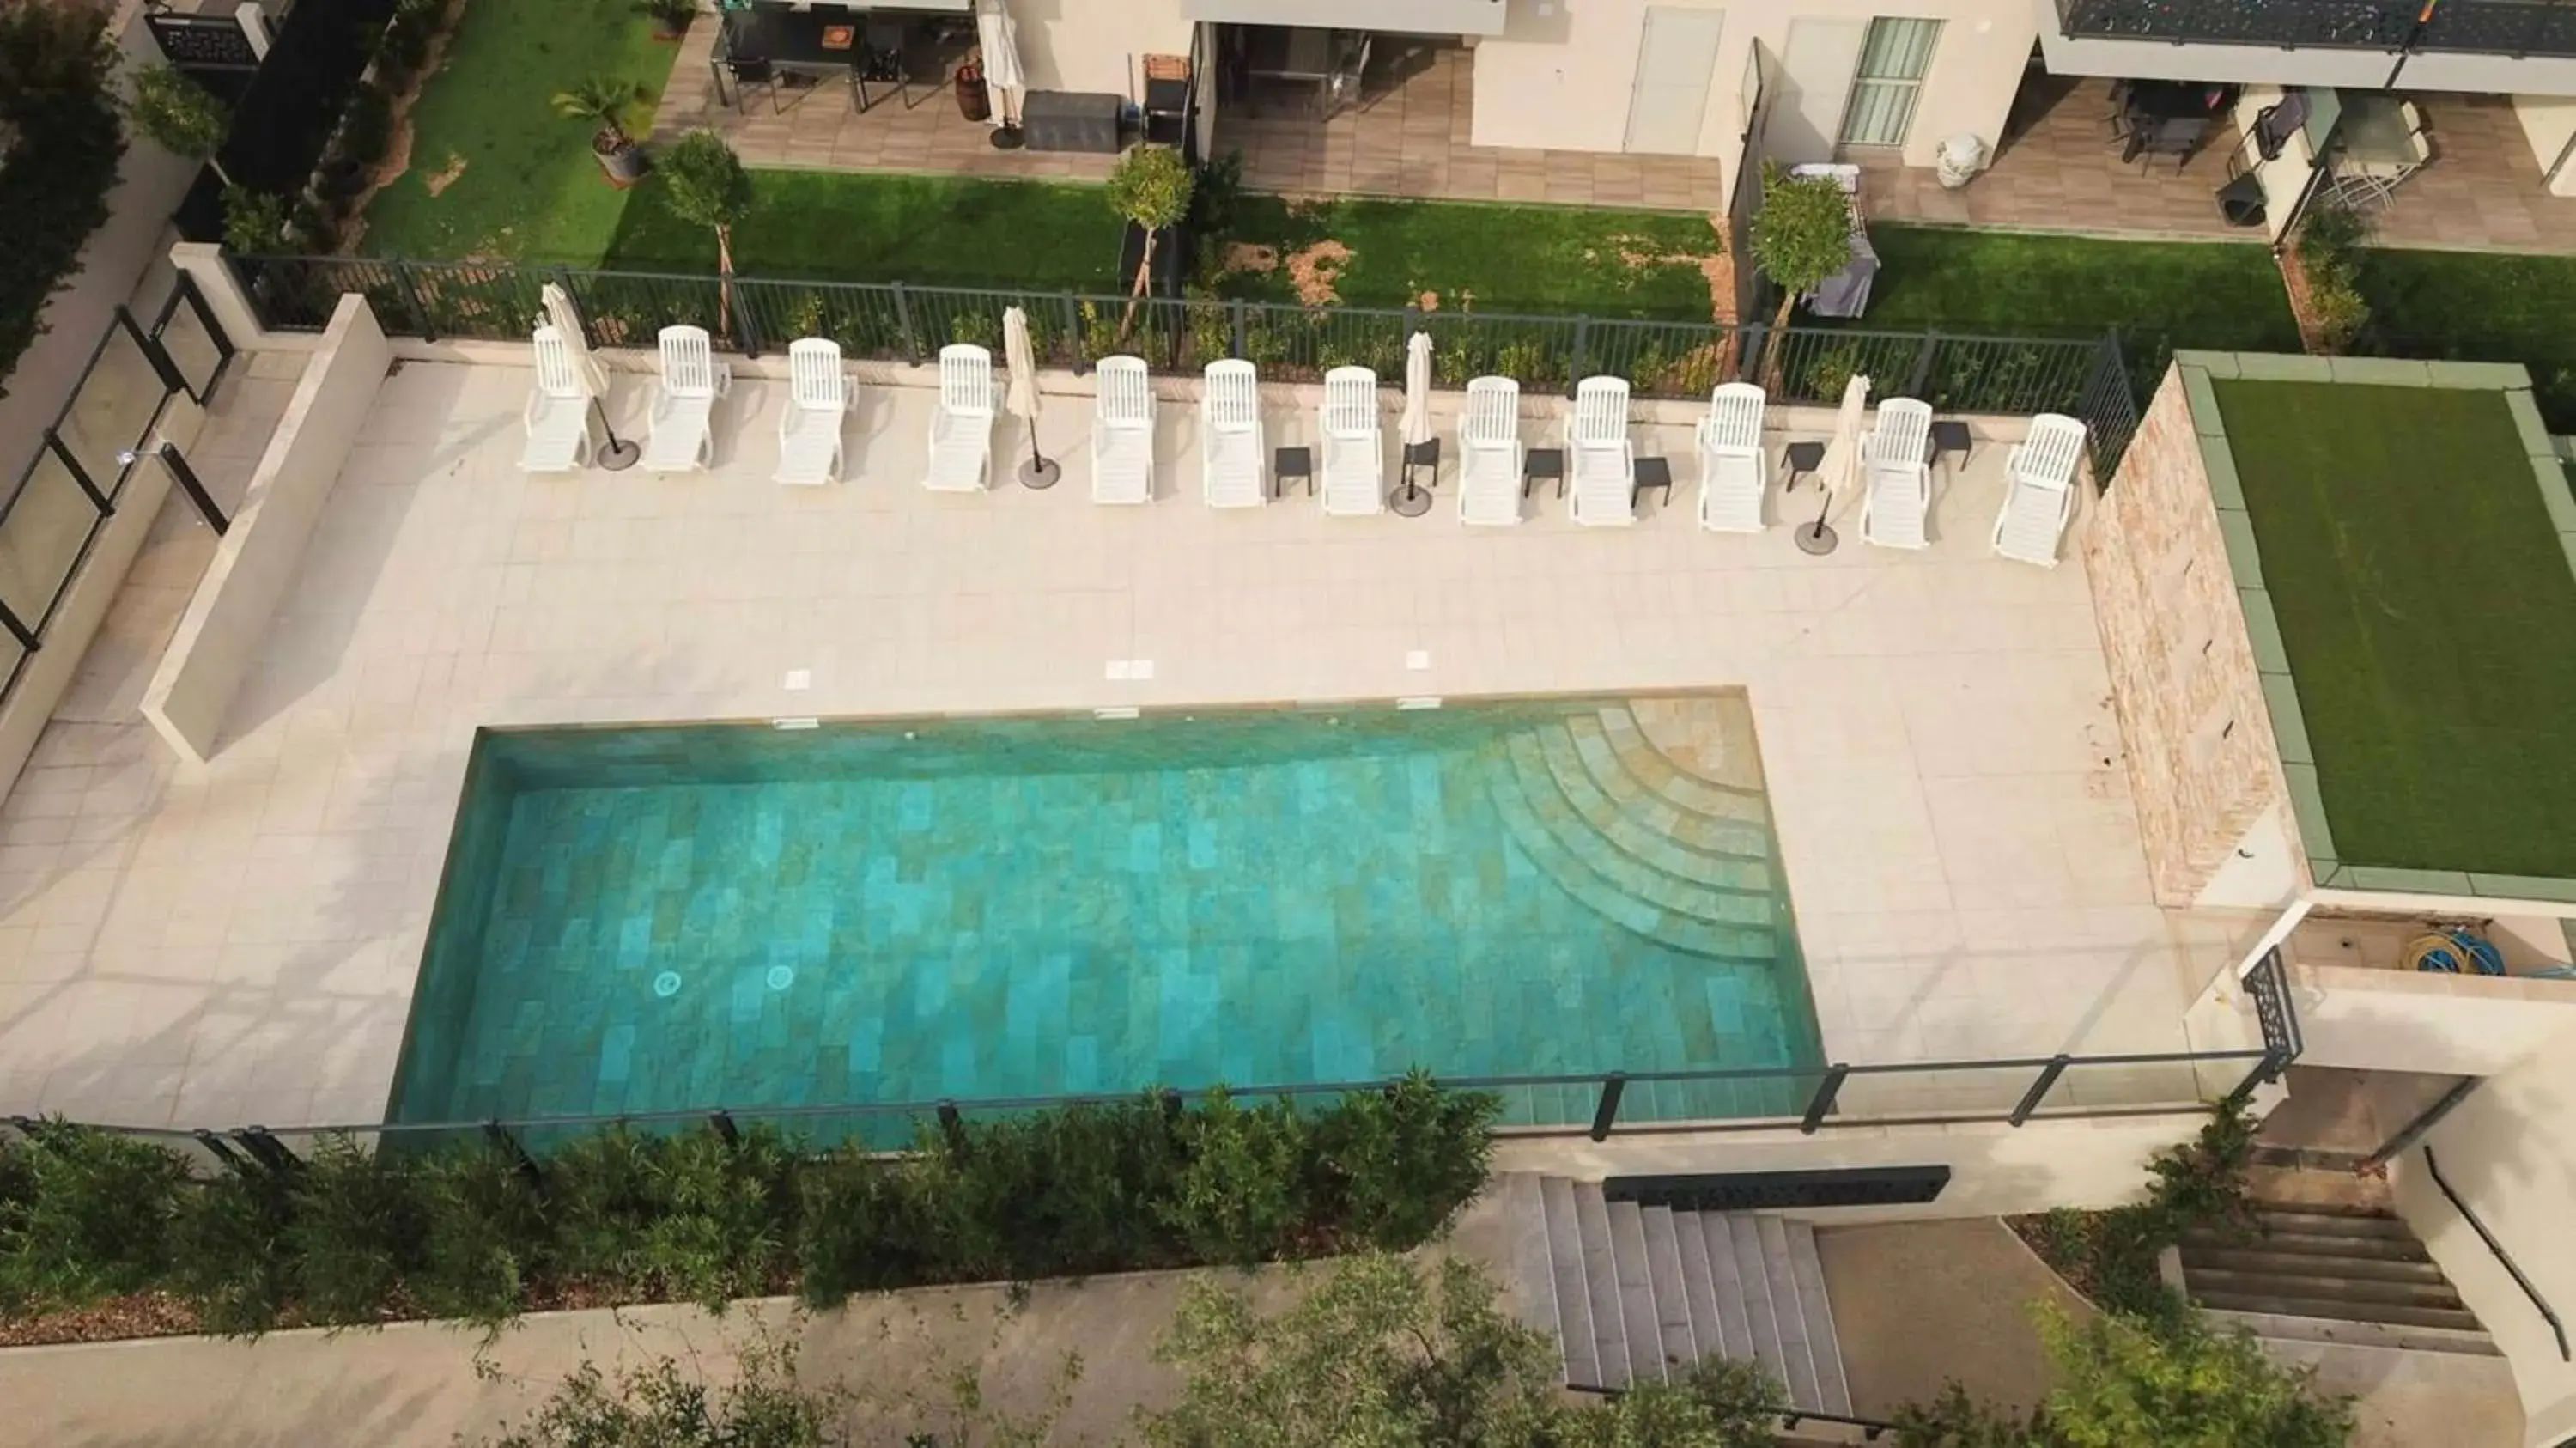 On site, Pool View in Best Western Plus Soleil et Jardin